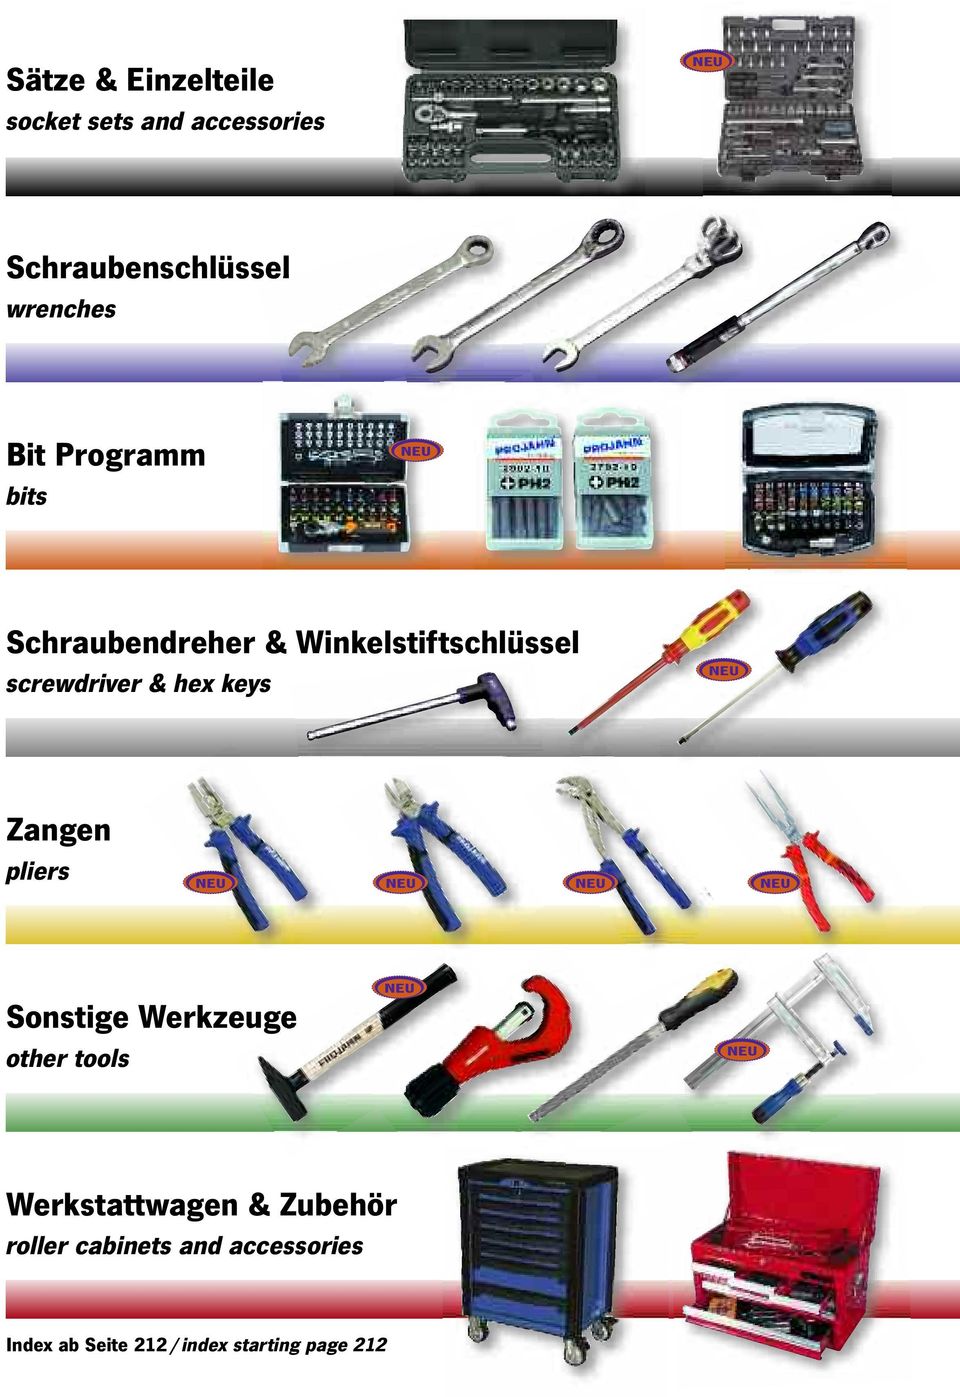 keys Zangen pliers Sonstige Werkzeuge other tools Werkstattwagen & Zubehör